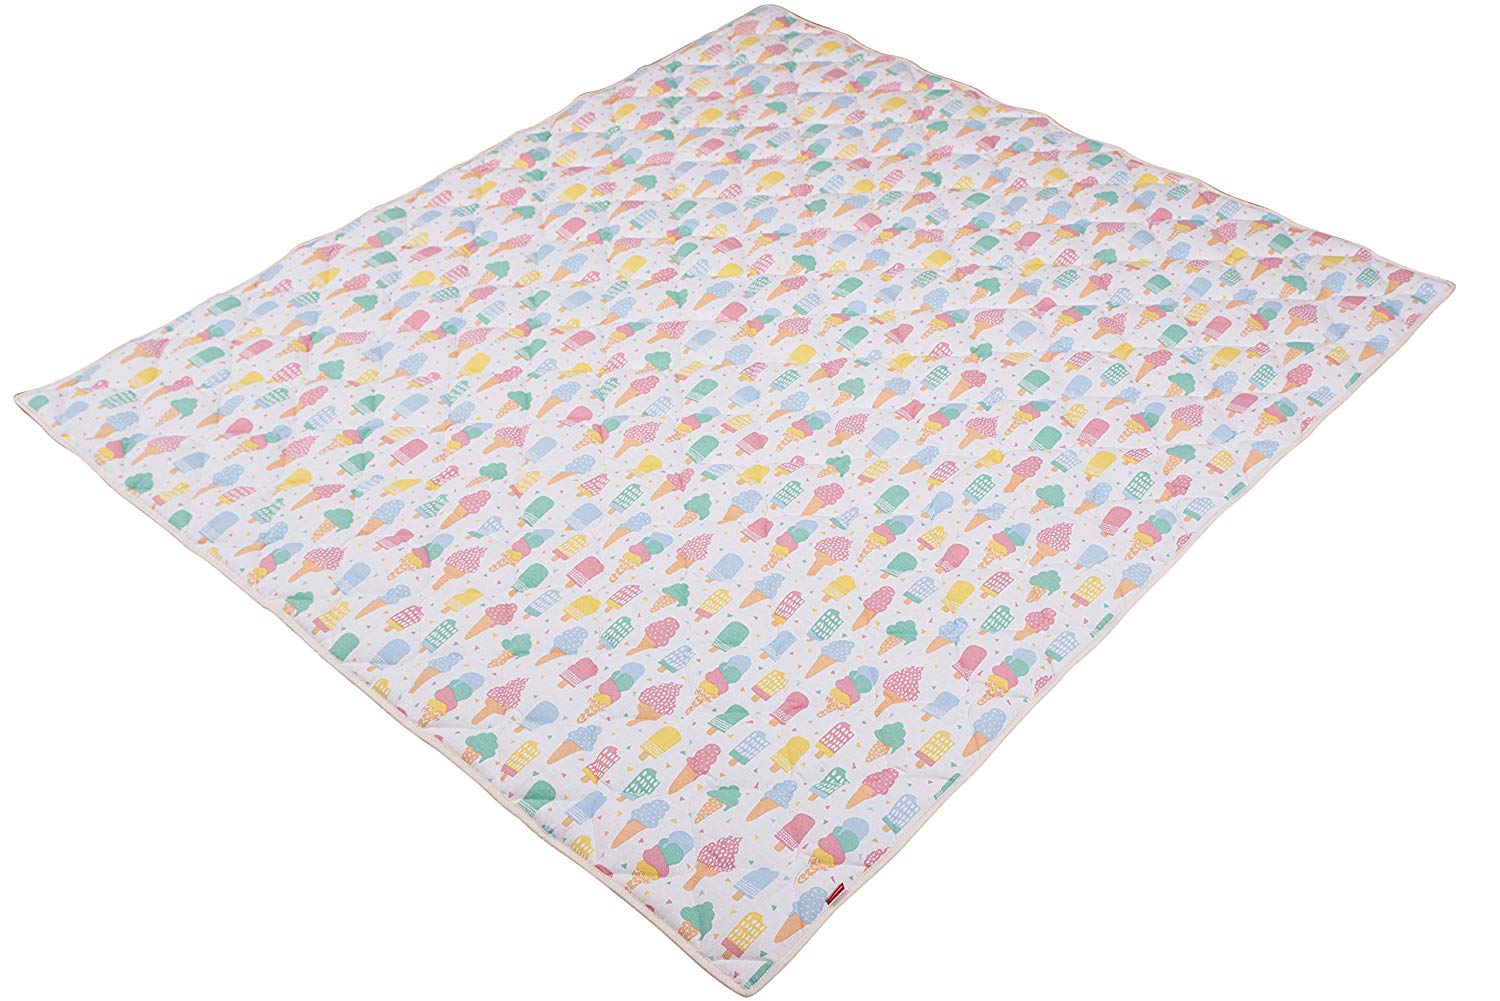 Ideenreich 2395 Crawling Crawling Blanket 135 x 150 cm Multi-Coloured